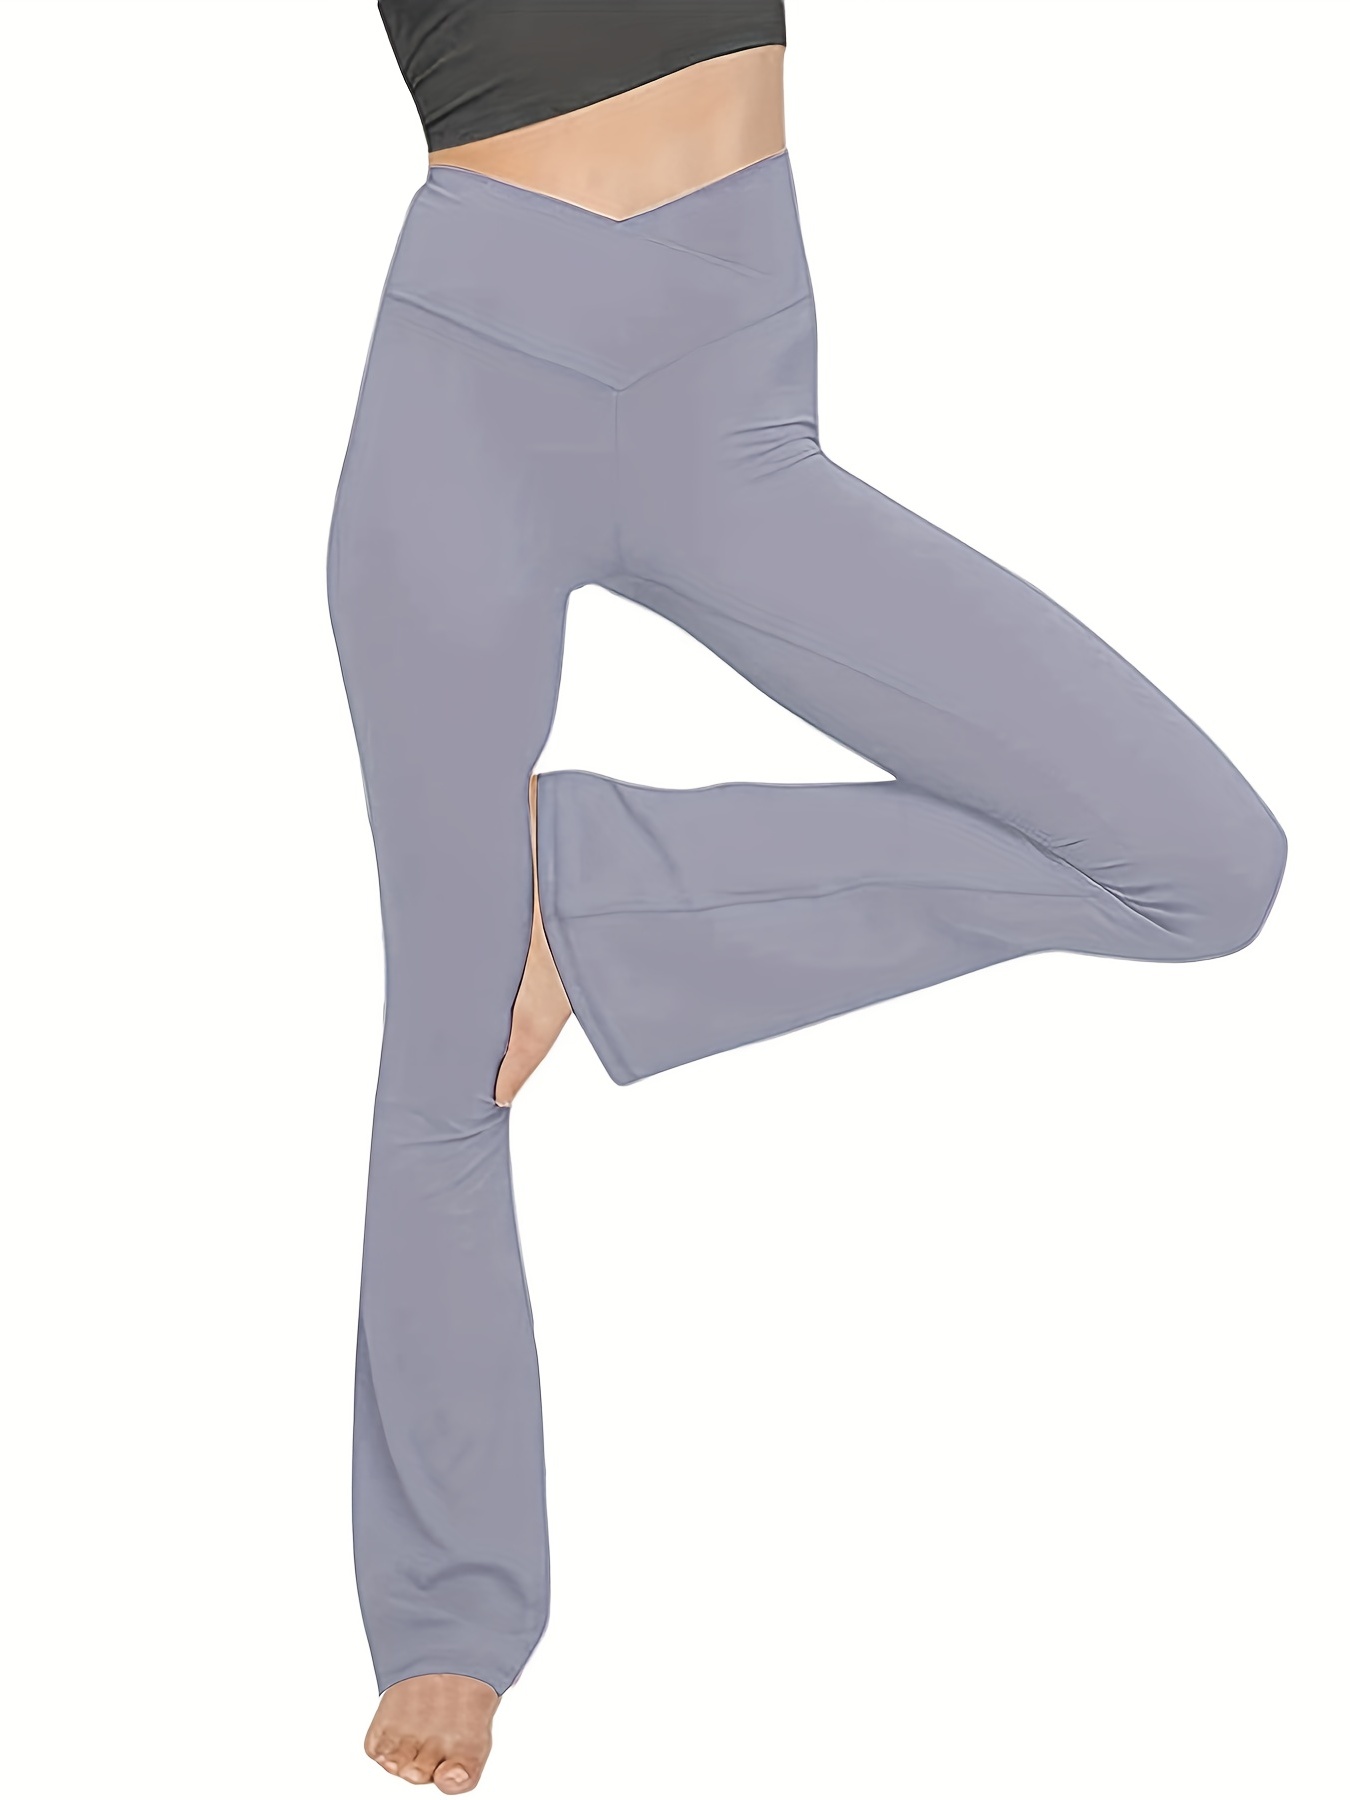 Yoga Leggings / Adjustable Leggings / Yoga Pants / Yoga Pants Women /  Workout Leggings / Leggings for Women / Yoga Leggins / Cute Leggings 